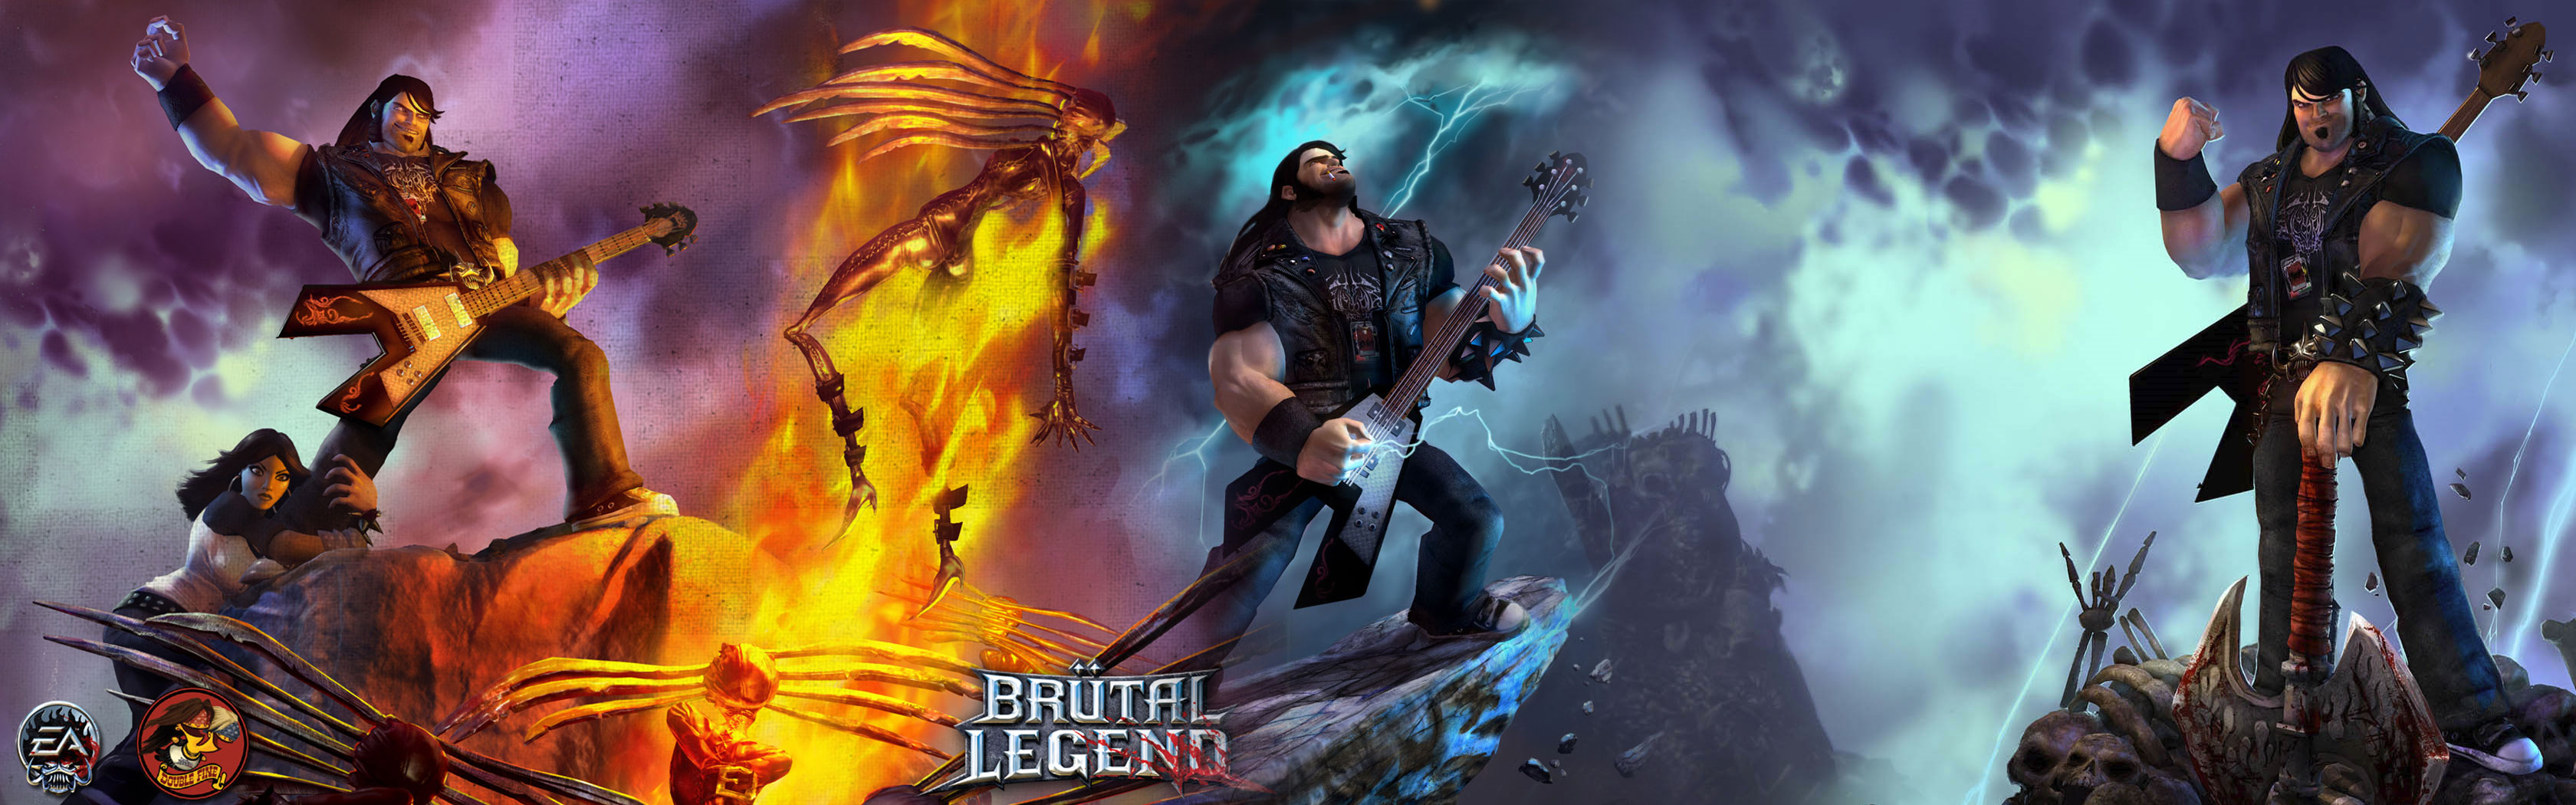 Video Game Brutal Legend HD Wallpaper | Background Image